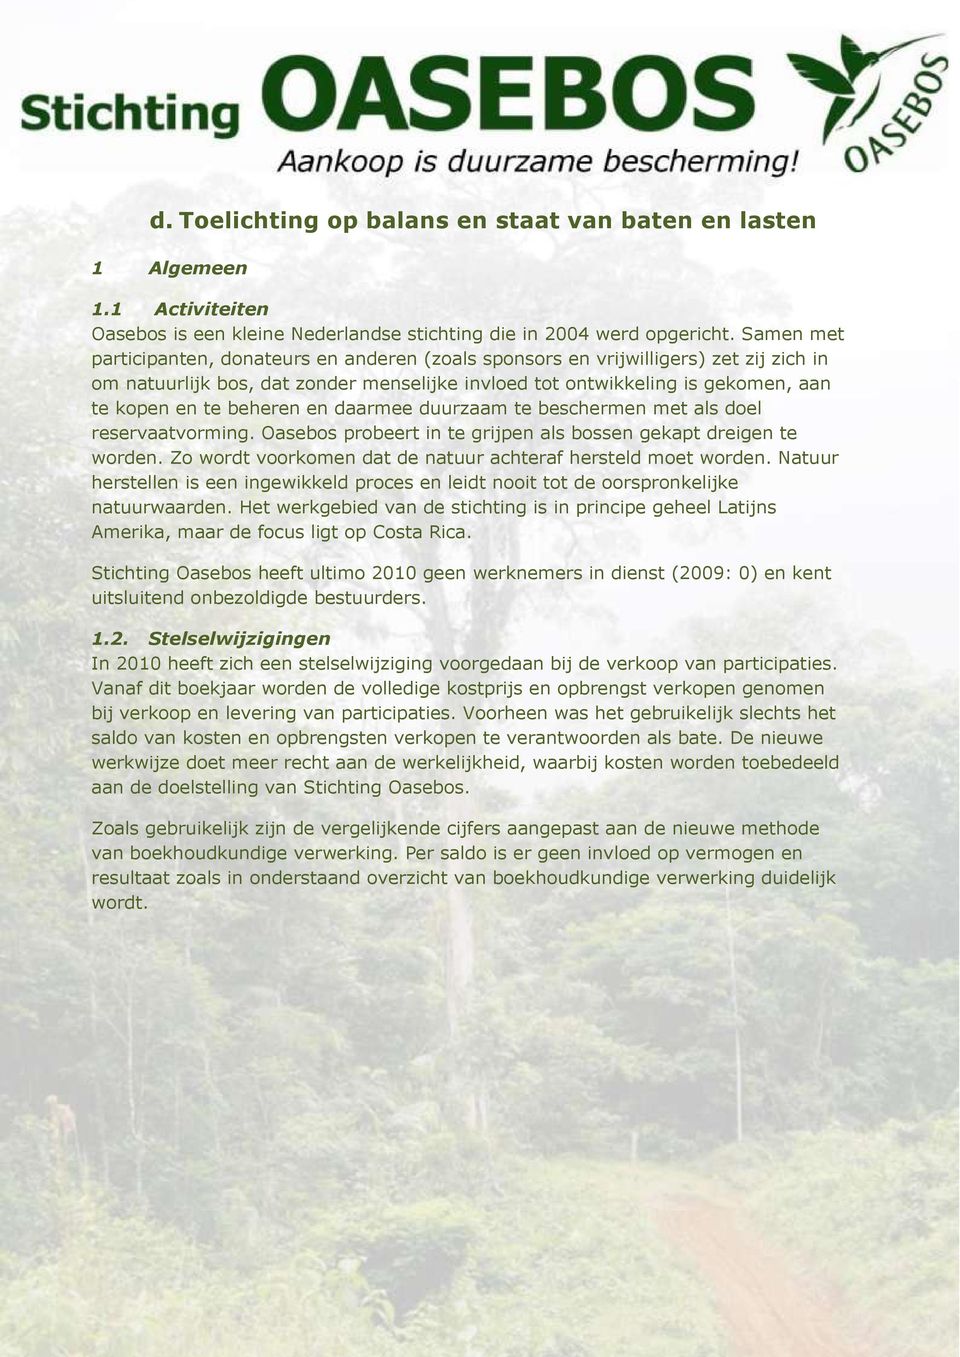 beheren en daarmee duurzaam te beschermen met als doel reservaatvorming. Oasebos probeert in te grijpen als bossen gekapt dreigen te worden.